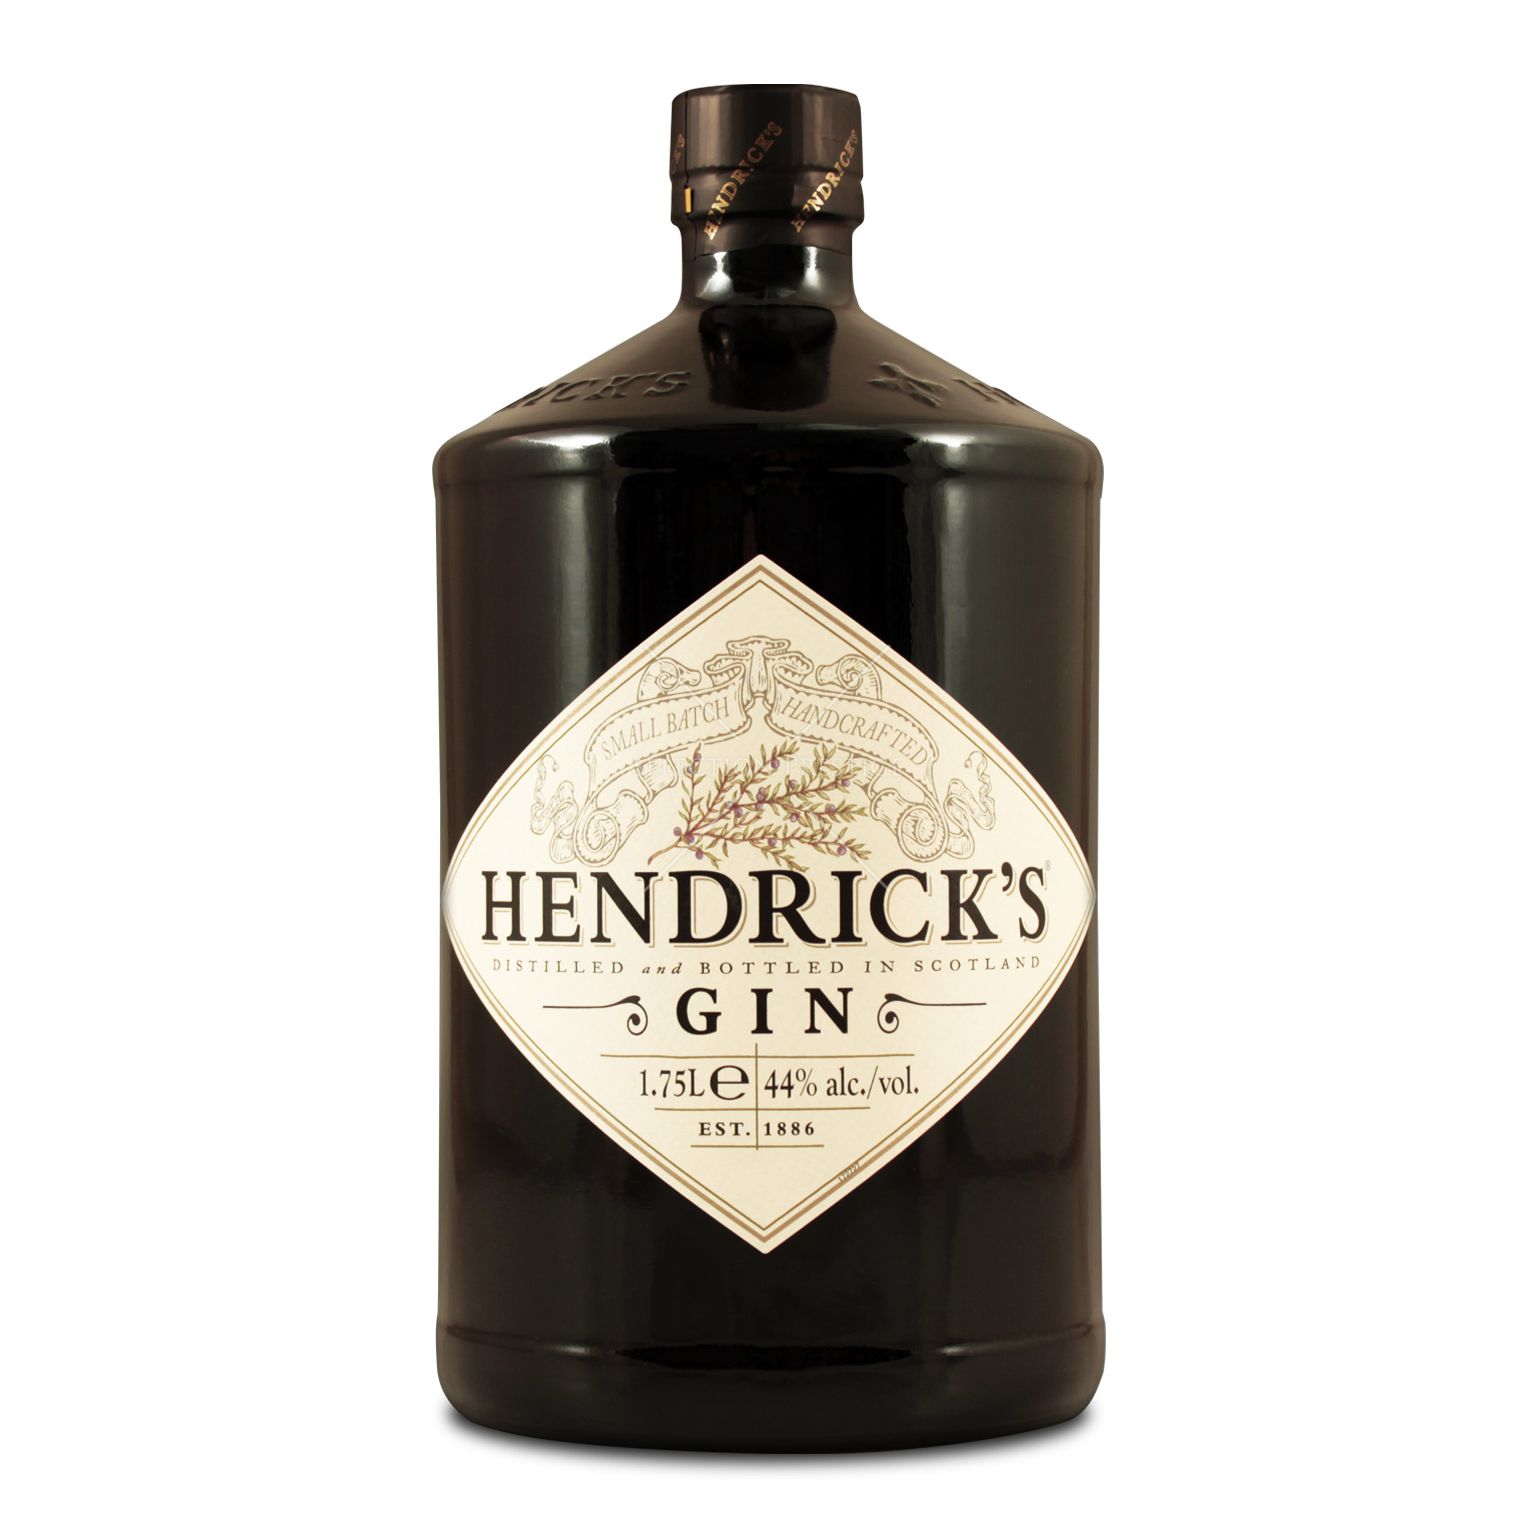 7.) Hendrick's 